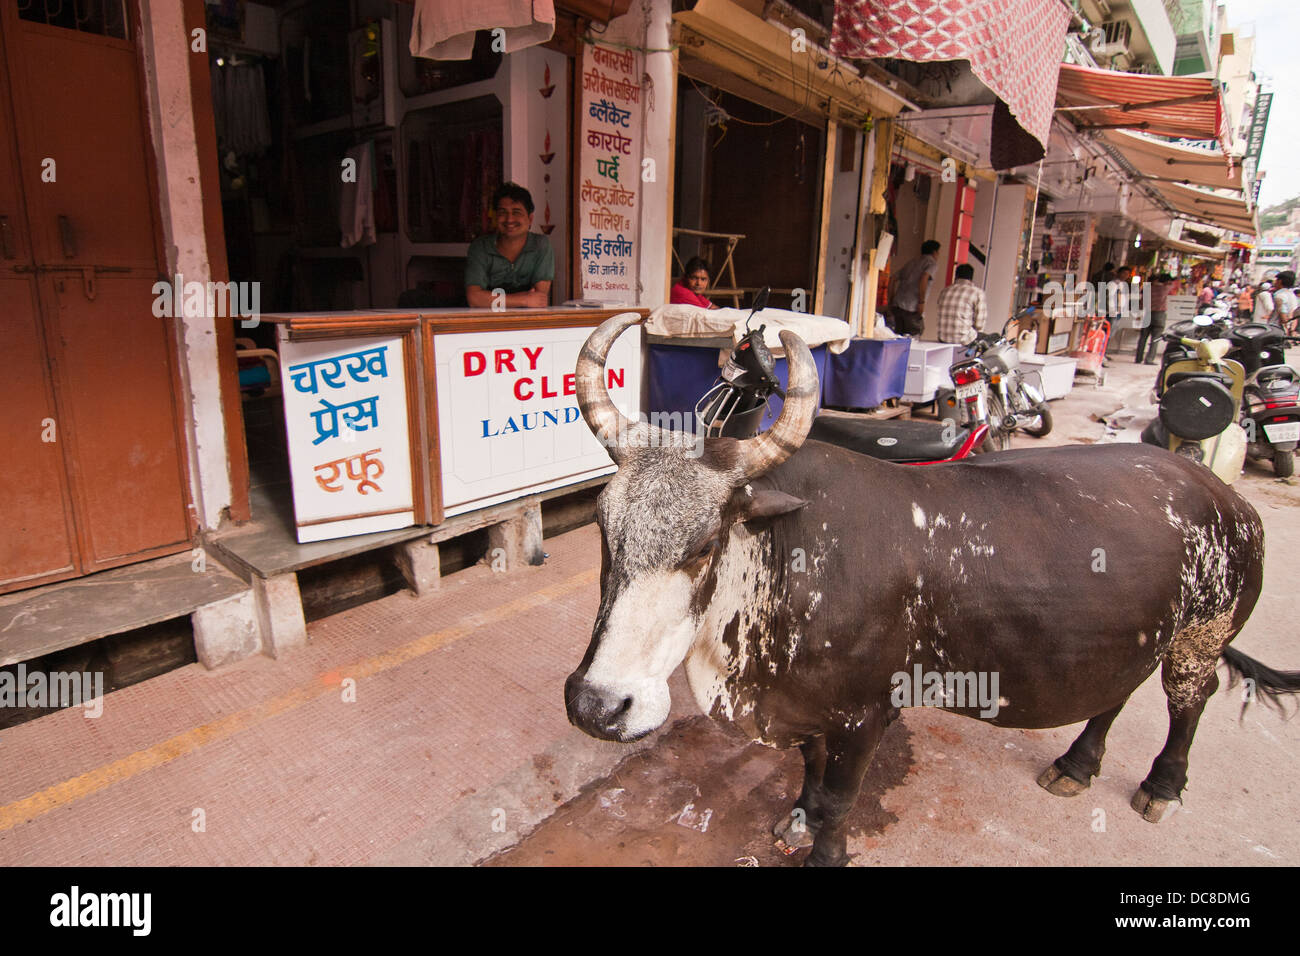 Boutique de linge à l'extérieur de la vache en Inde Banque D'Images